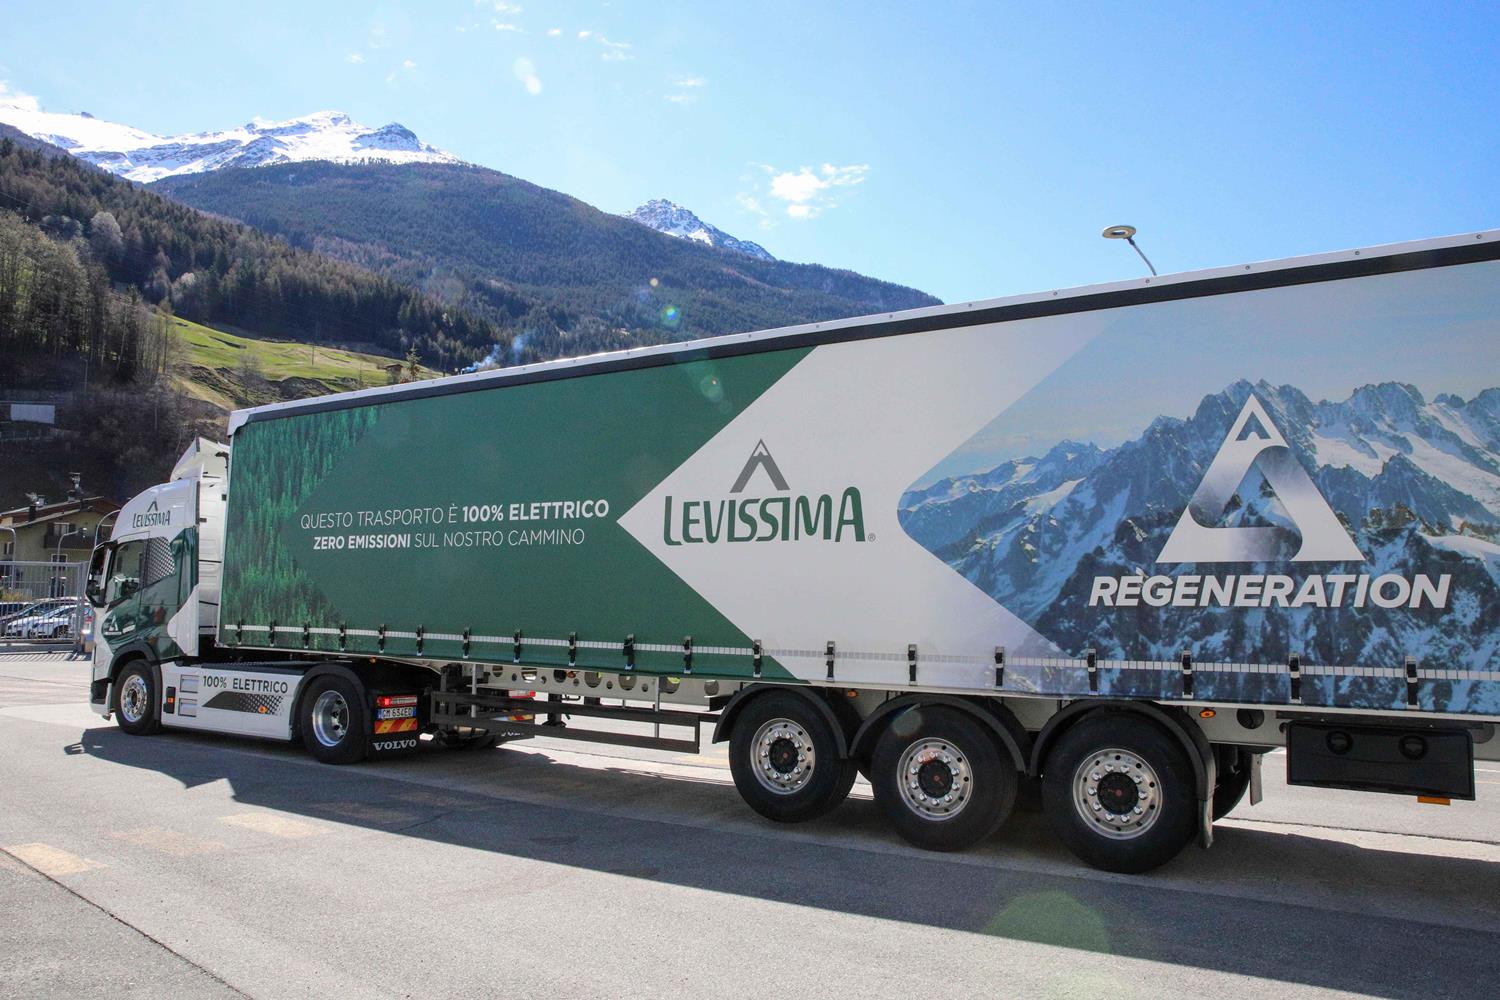 Transporte sustentável: Levissima inaugura o primeiro caminhão 100% elétrico